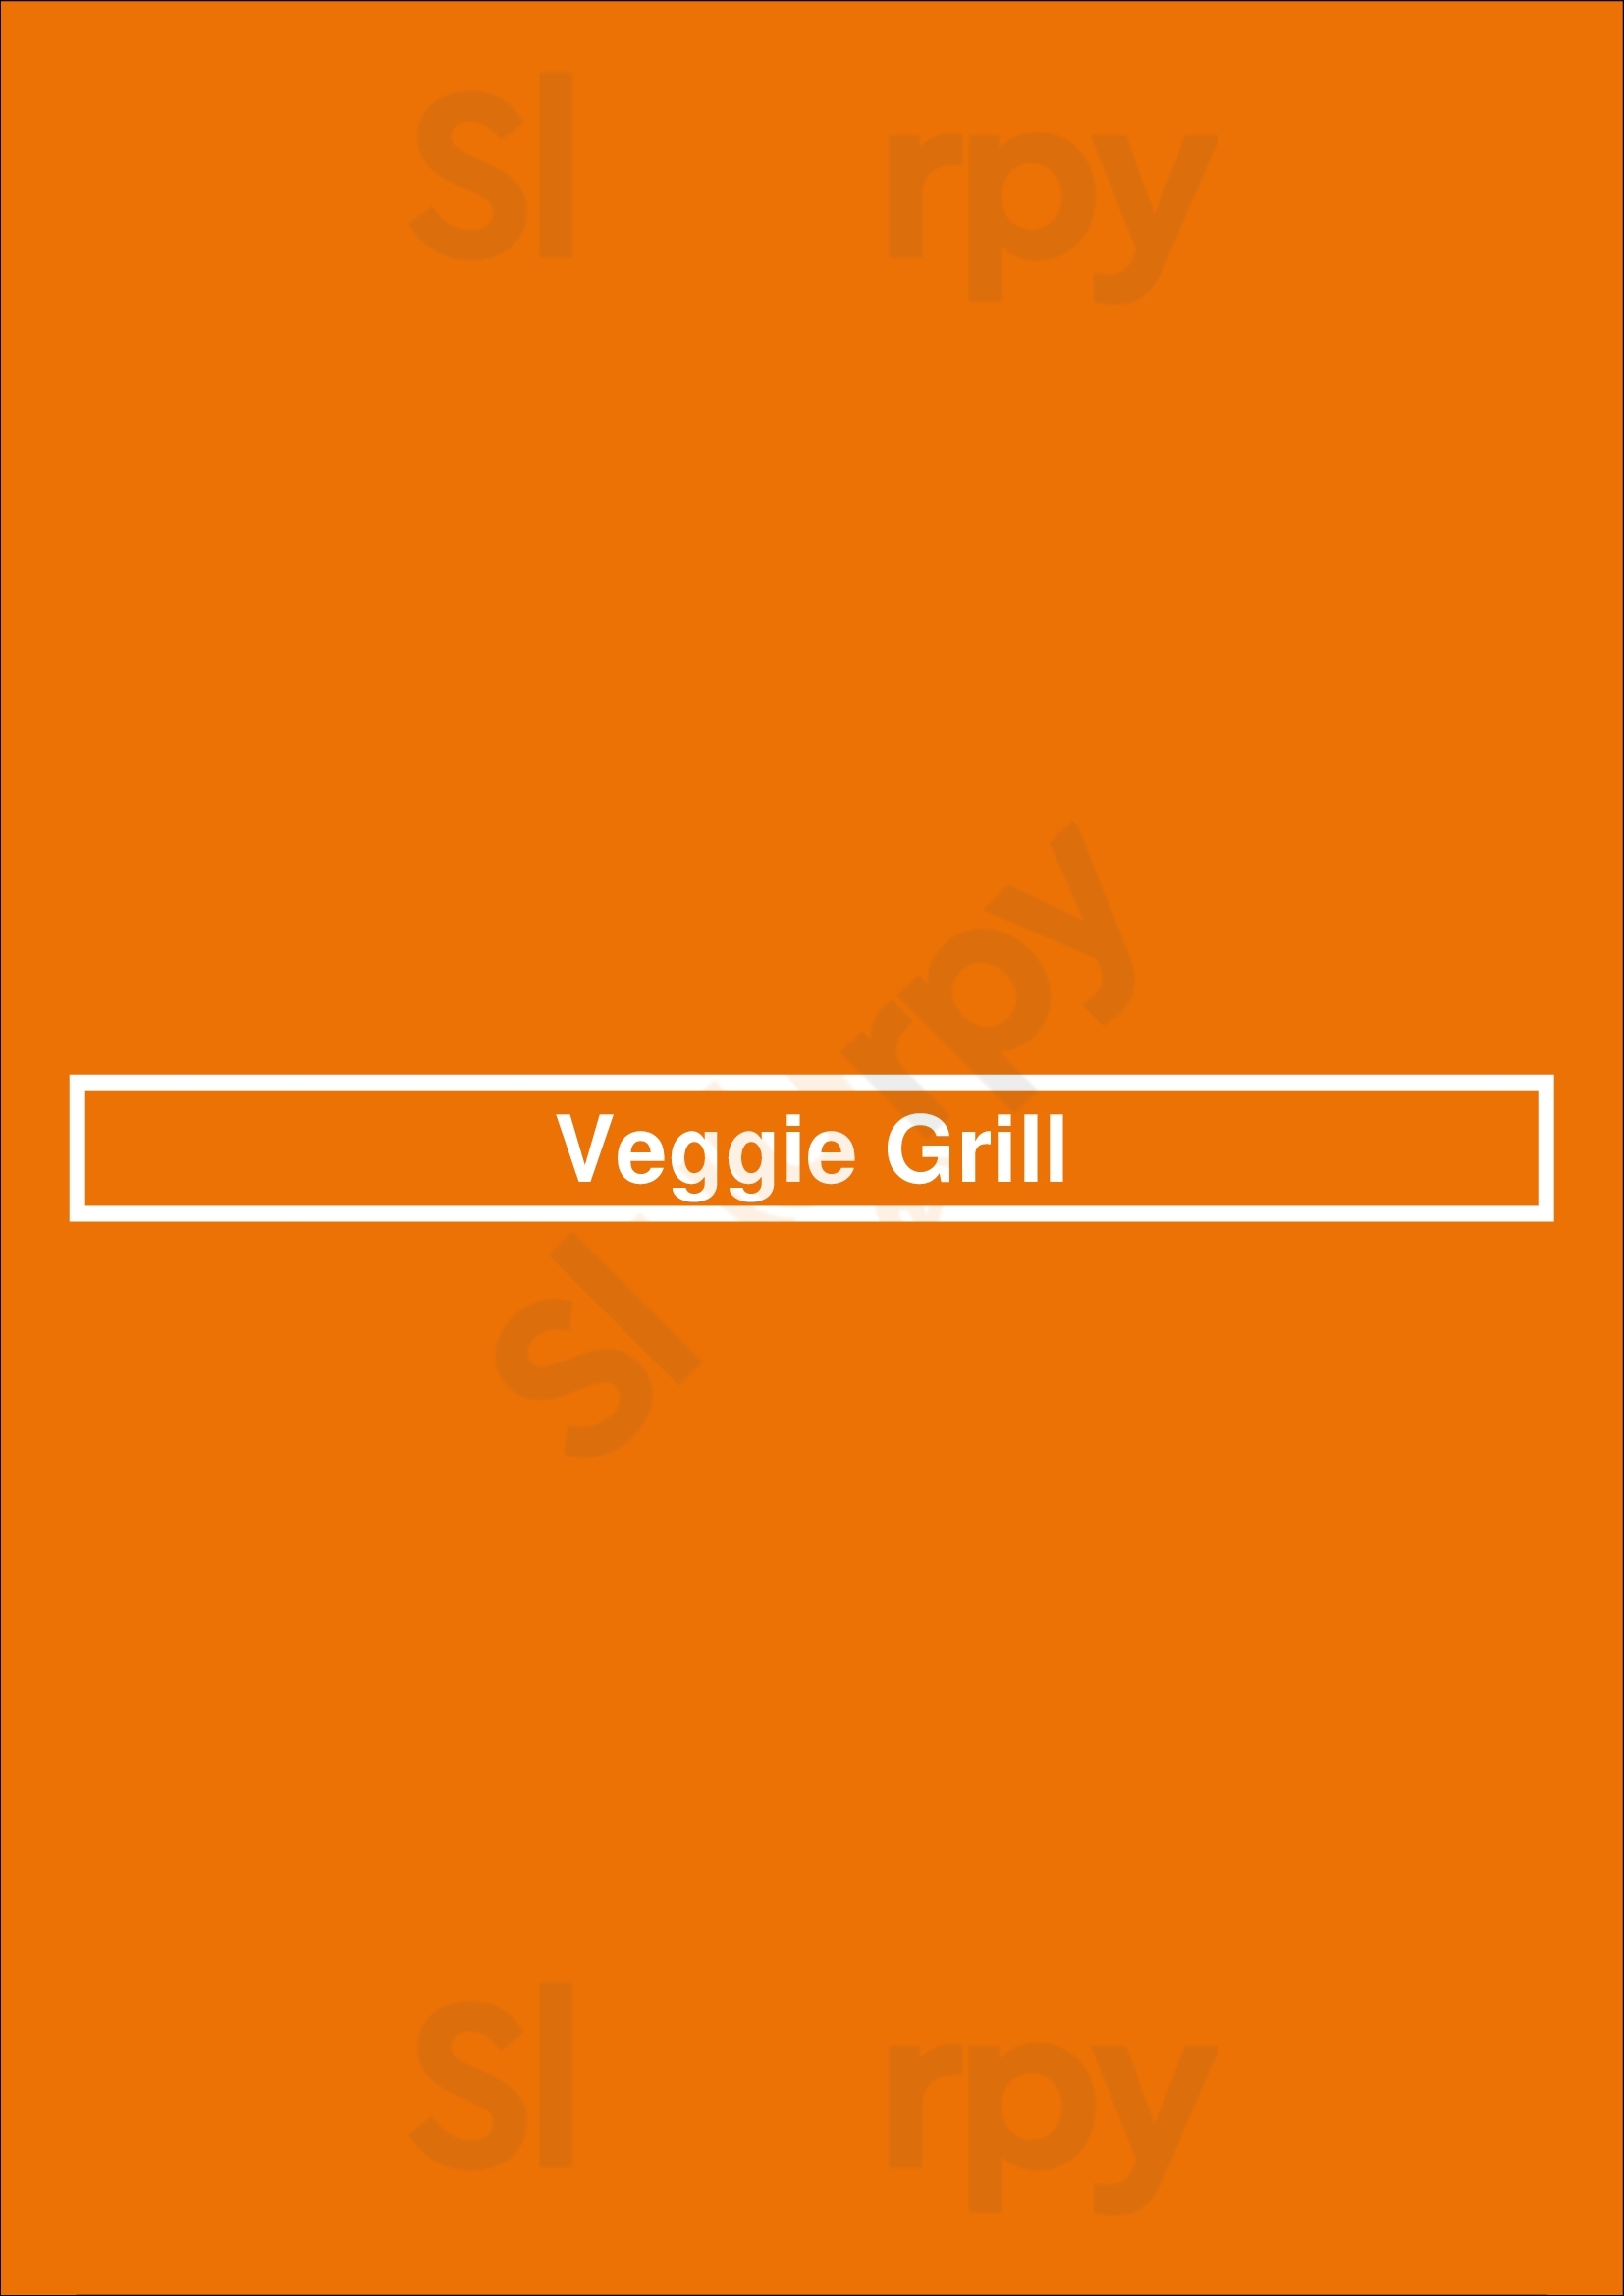 Veggie Grill Seattle Menu - 1